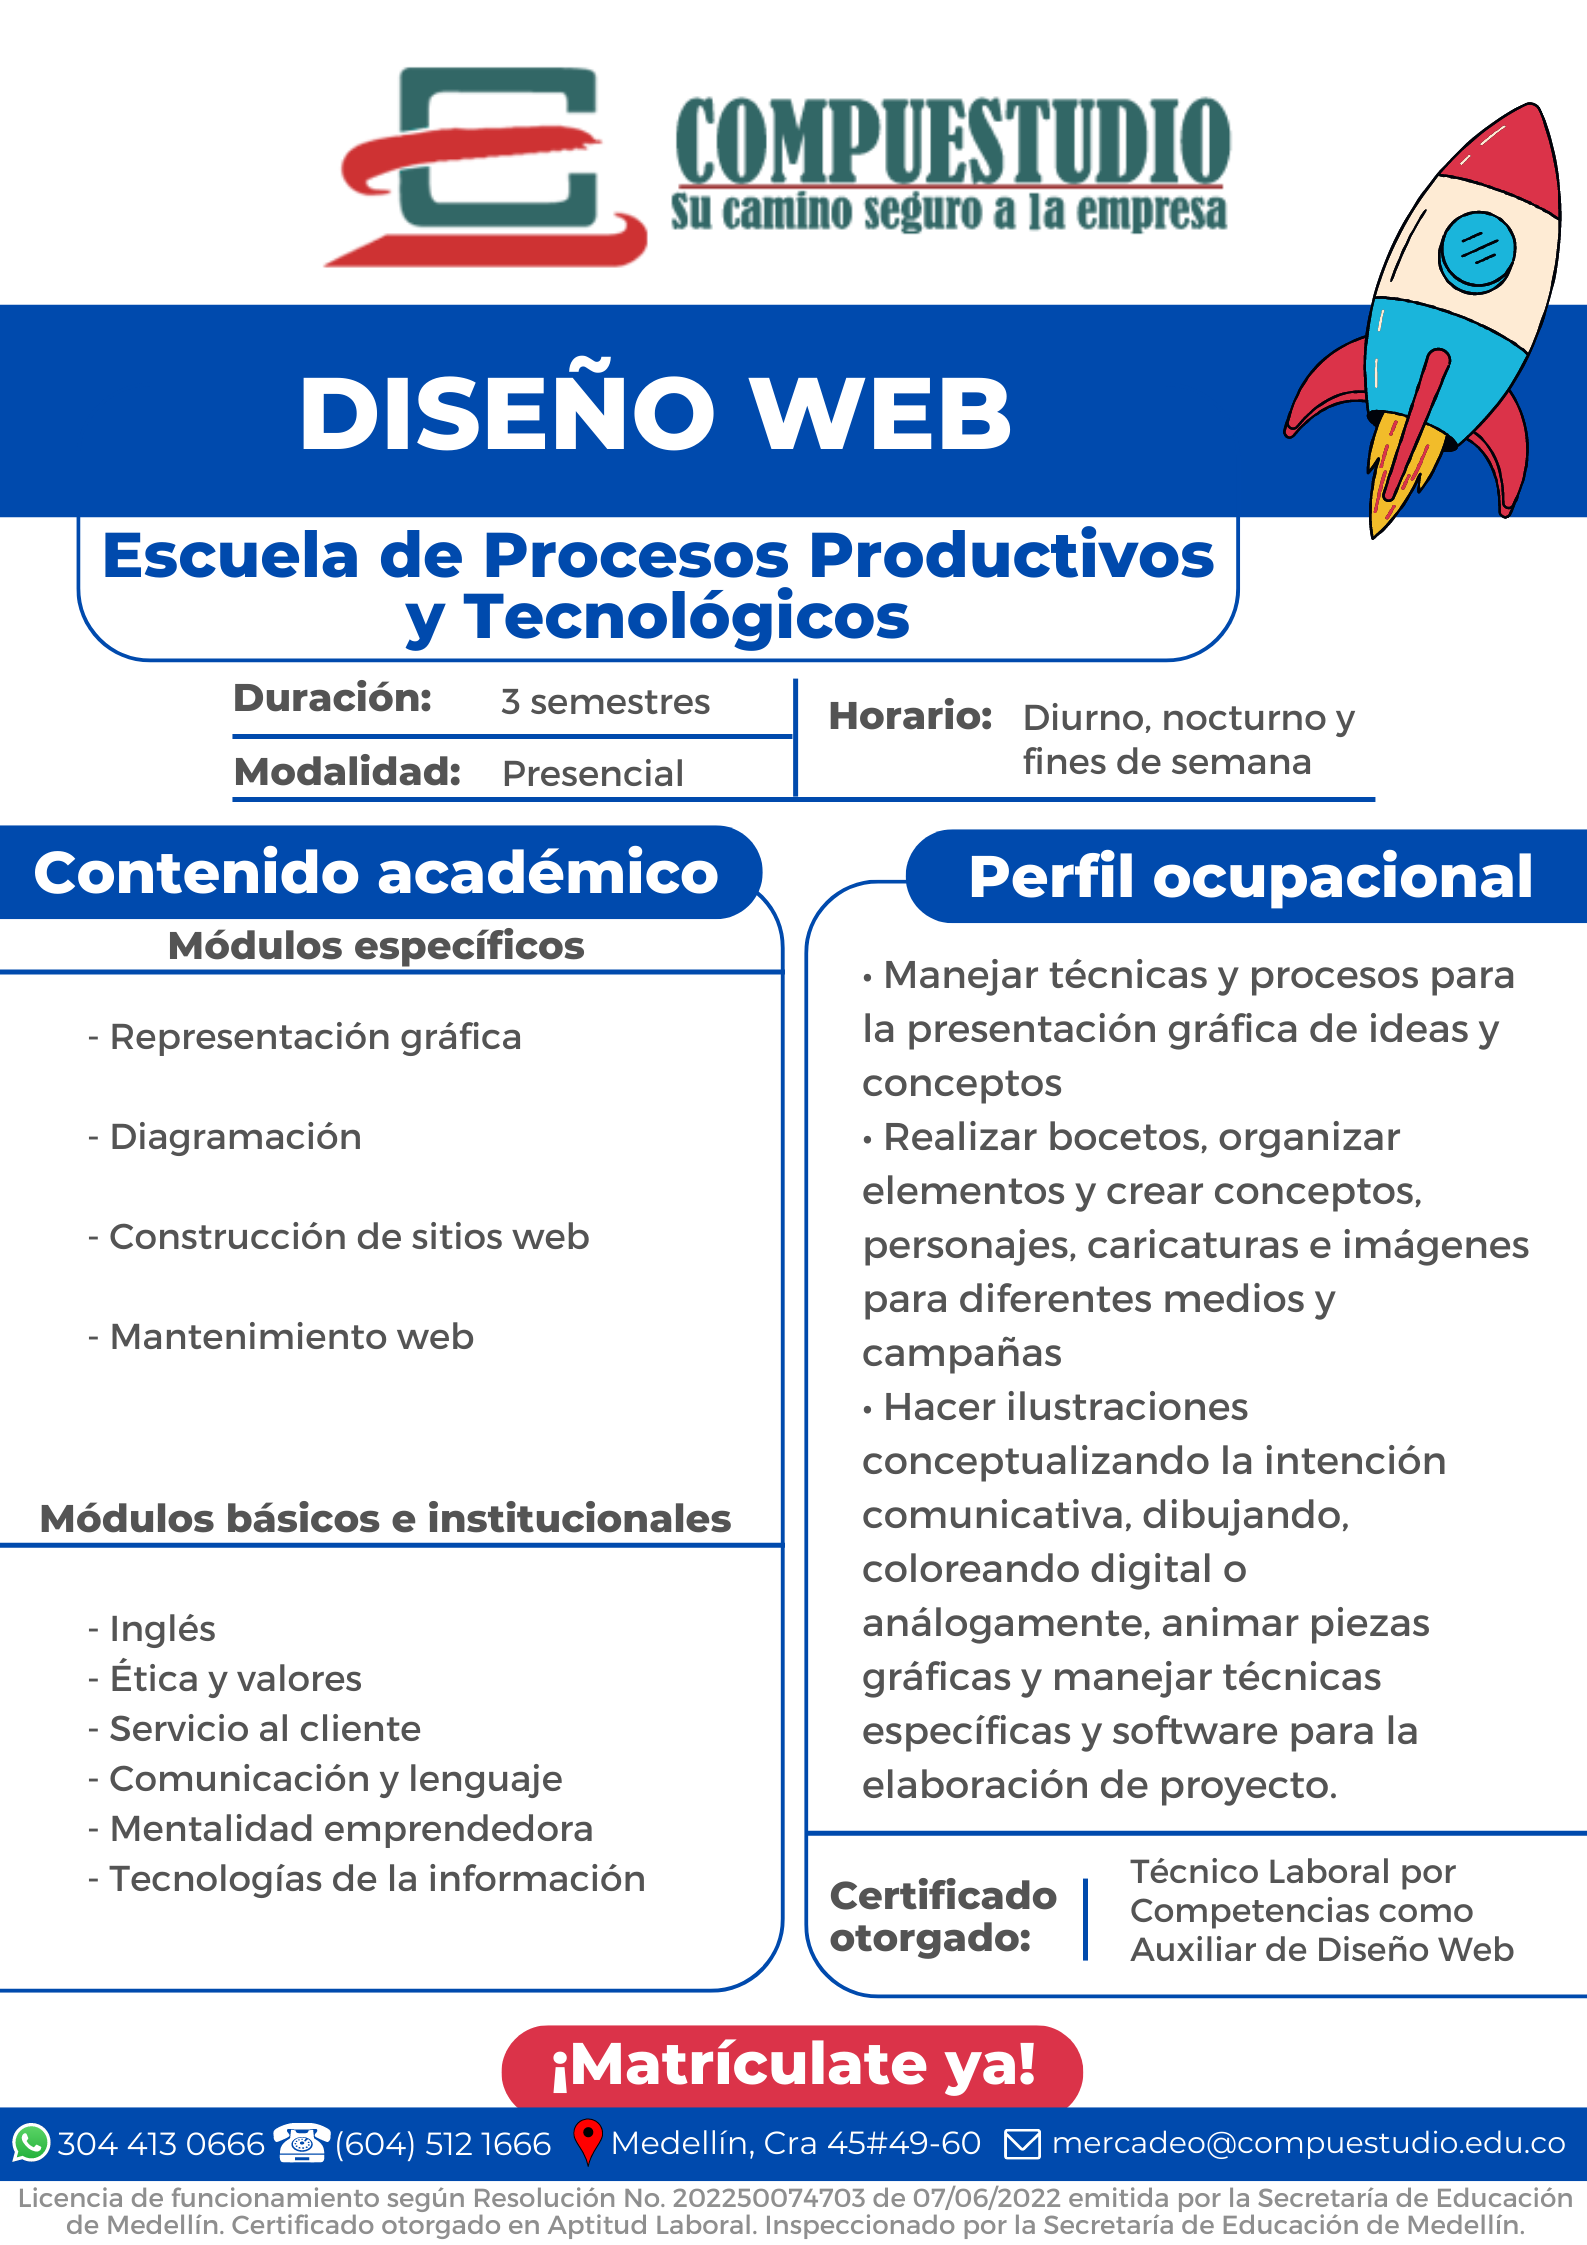 Técnico Auxiliar de Diseño web Medellín Compuestudio